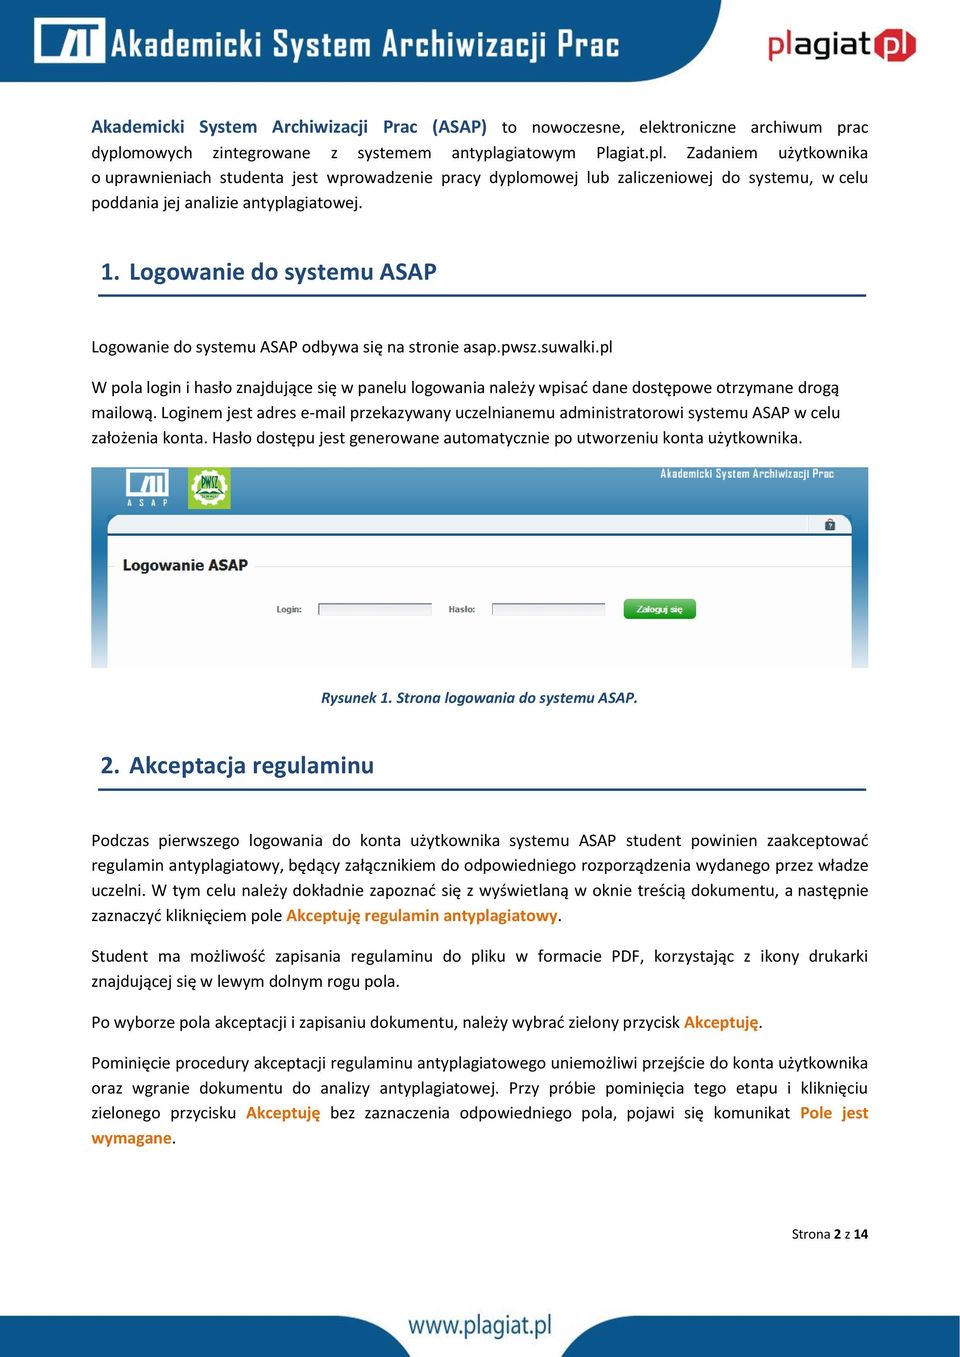 1. Logowanie do systemu ASAP Logowanie do systemu ASAP odbywa się na stronie asap.pwsz.suwalki.